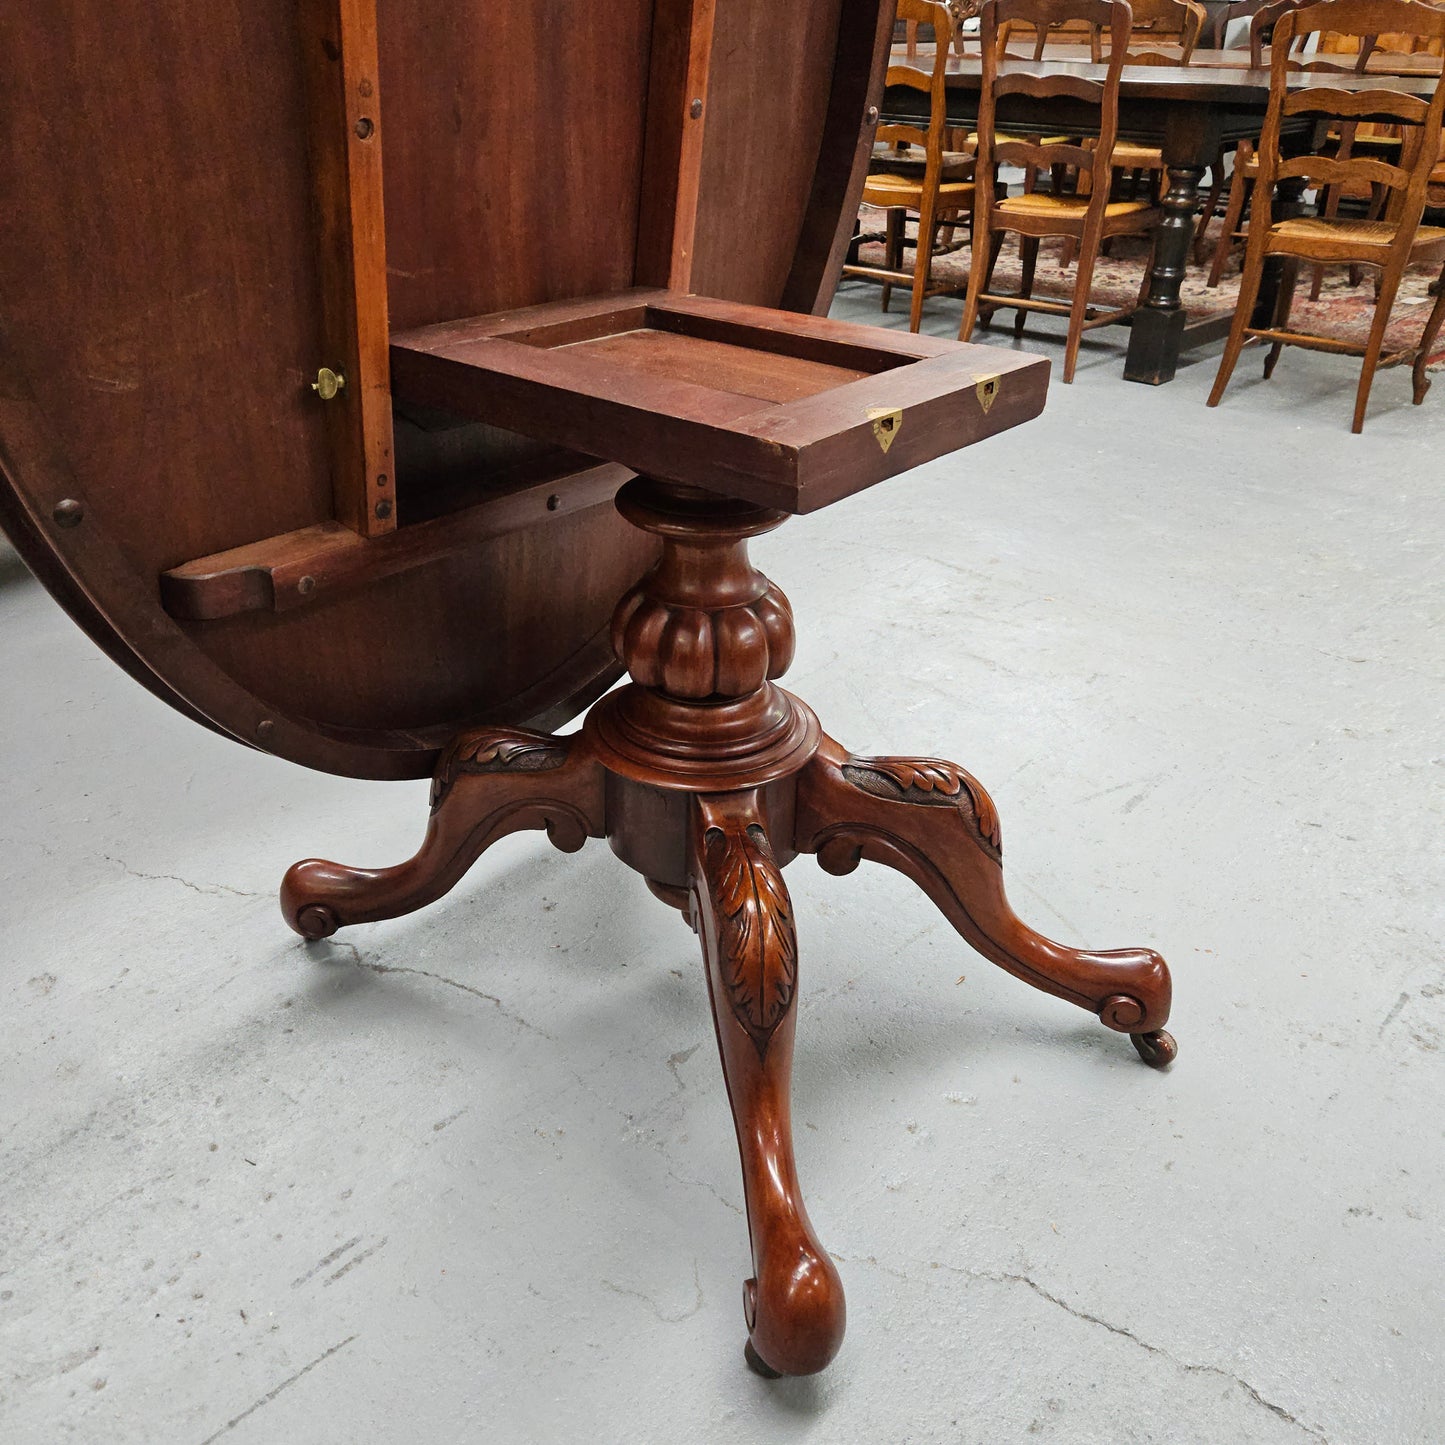 Victorian Oval Mahogany Loo Table